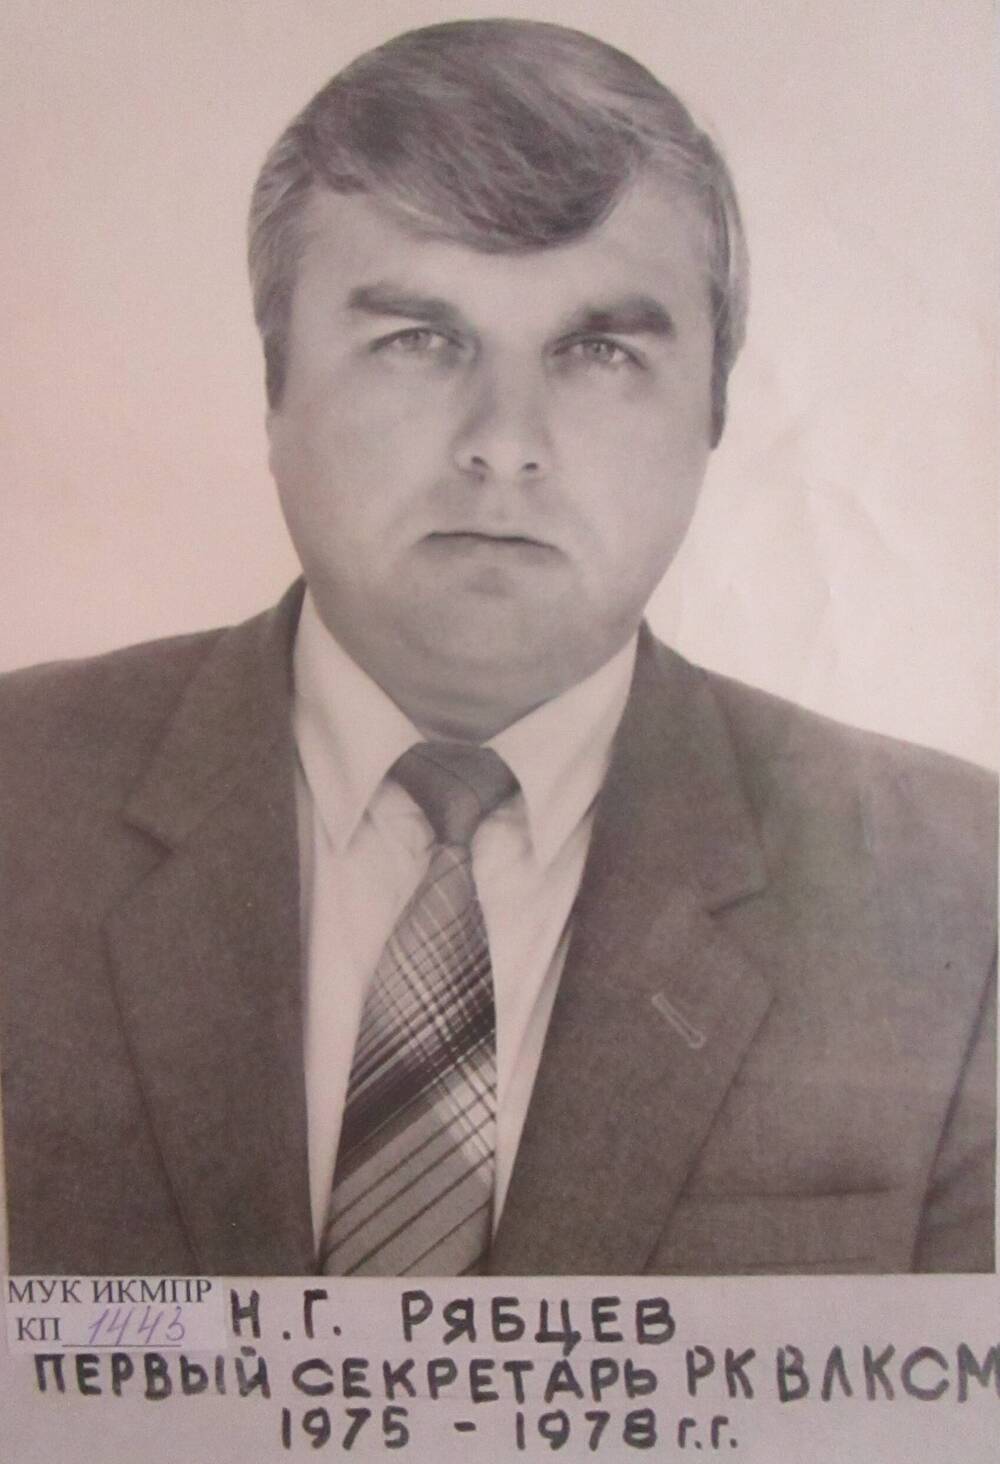 Фотопортрет Рябцев Н.Г. - первый секретарь РК ВЛКСМ 1975-1978гг